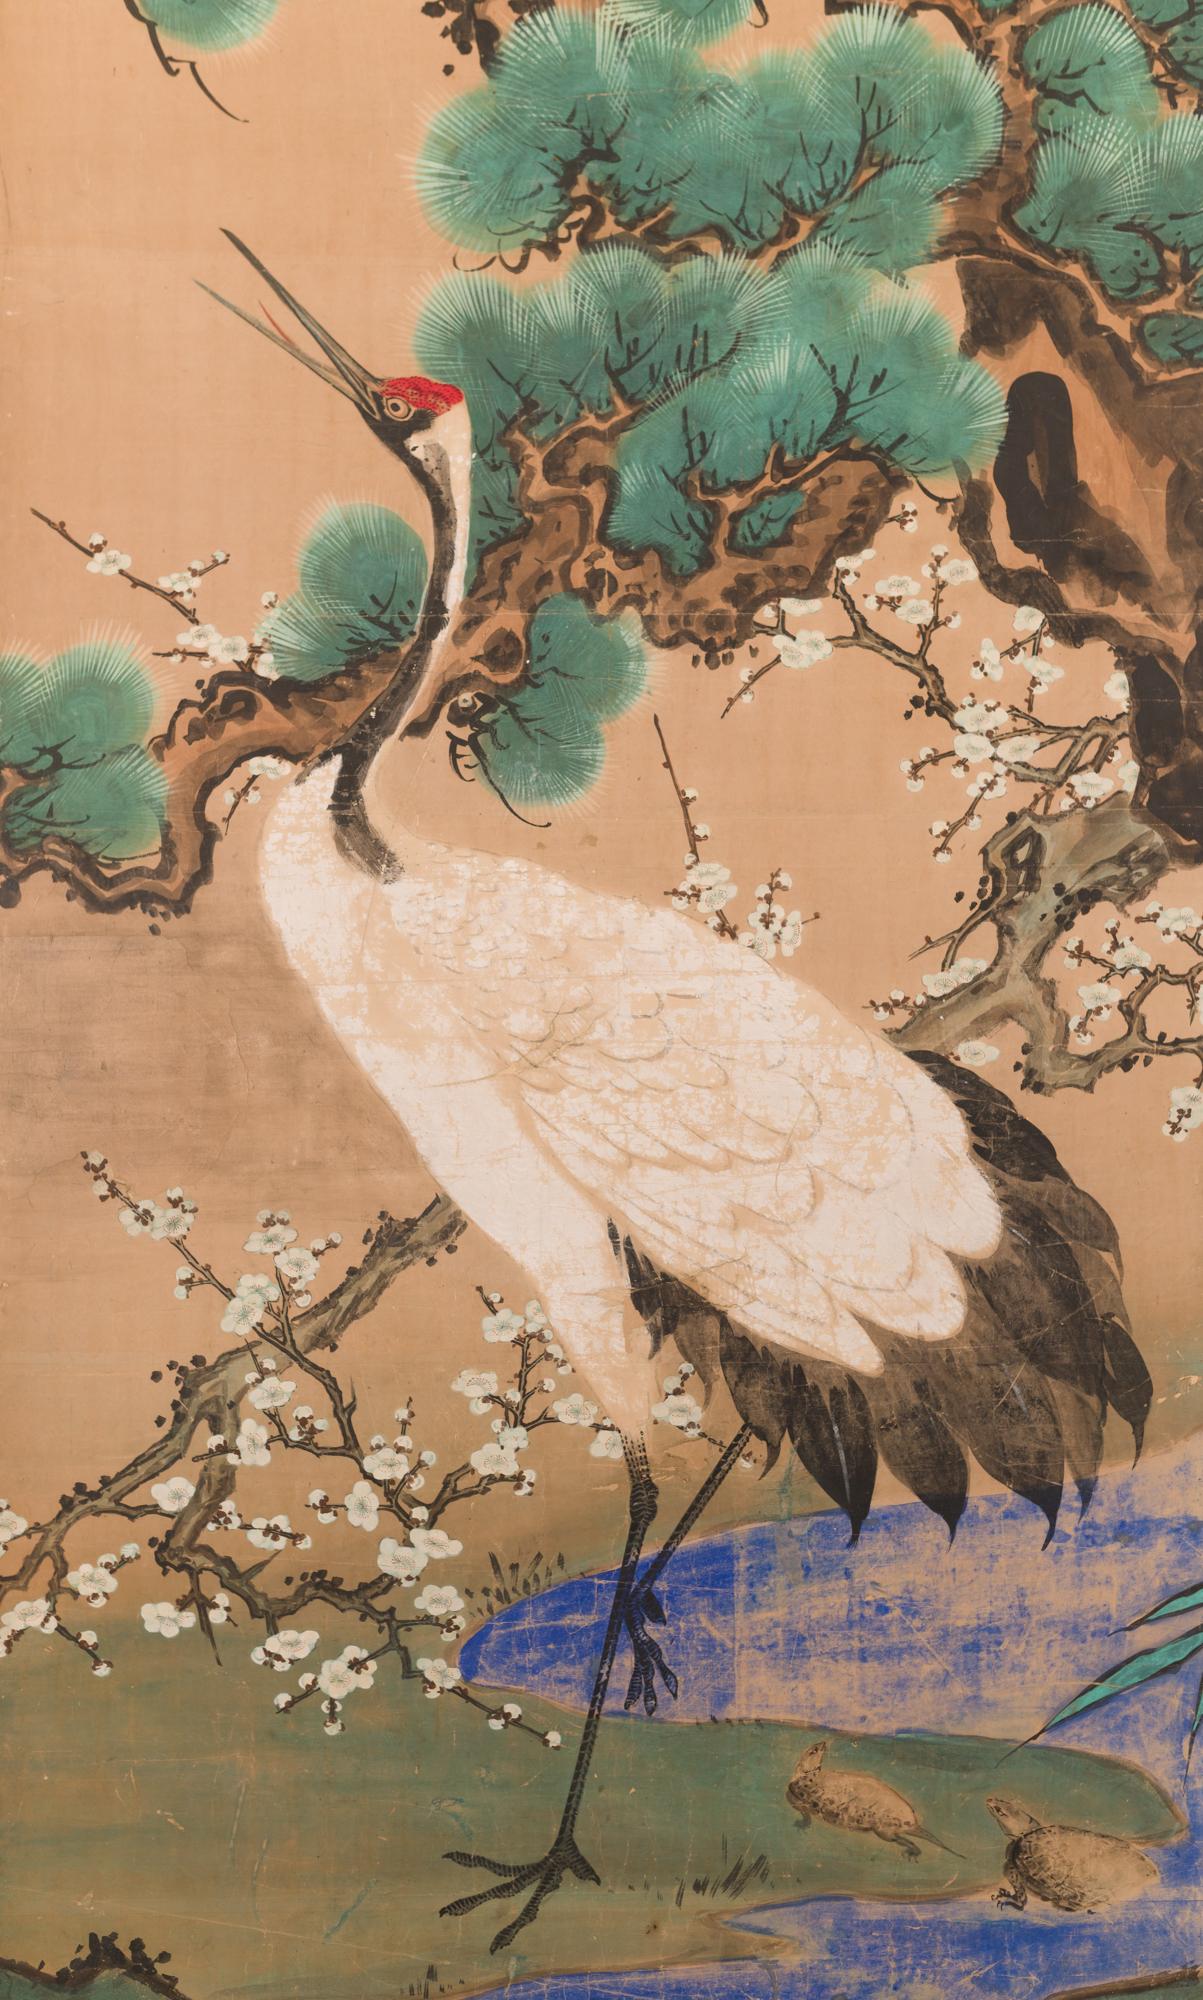 Au Japon, les grues symbolisent la fidélité car elles s'accouplent pour la vie et les tortues symbolisent la longévité. En outre, cet écran présente le motif japonais du sho-chiku-bai, ou les trois amis de l'hiver (le pin, le prunier et le bambou).